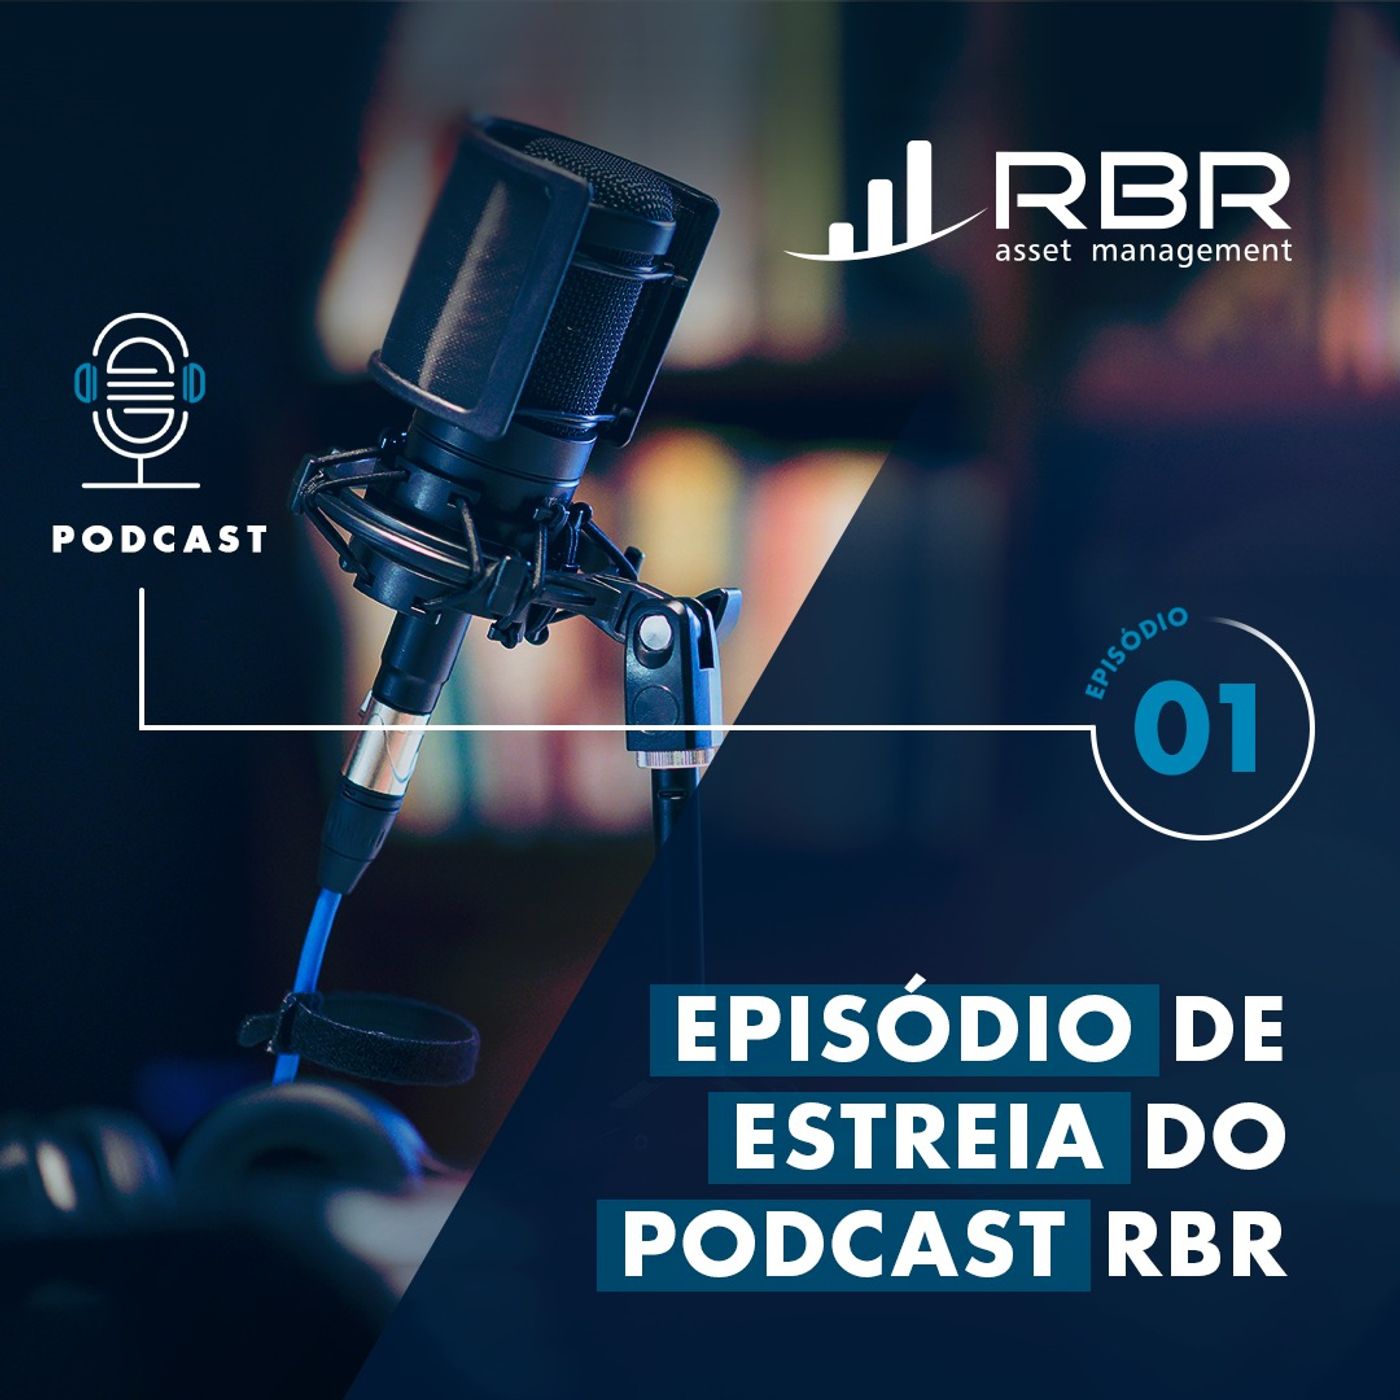 E1: Episódio de estreia do podcast RBR